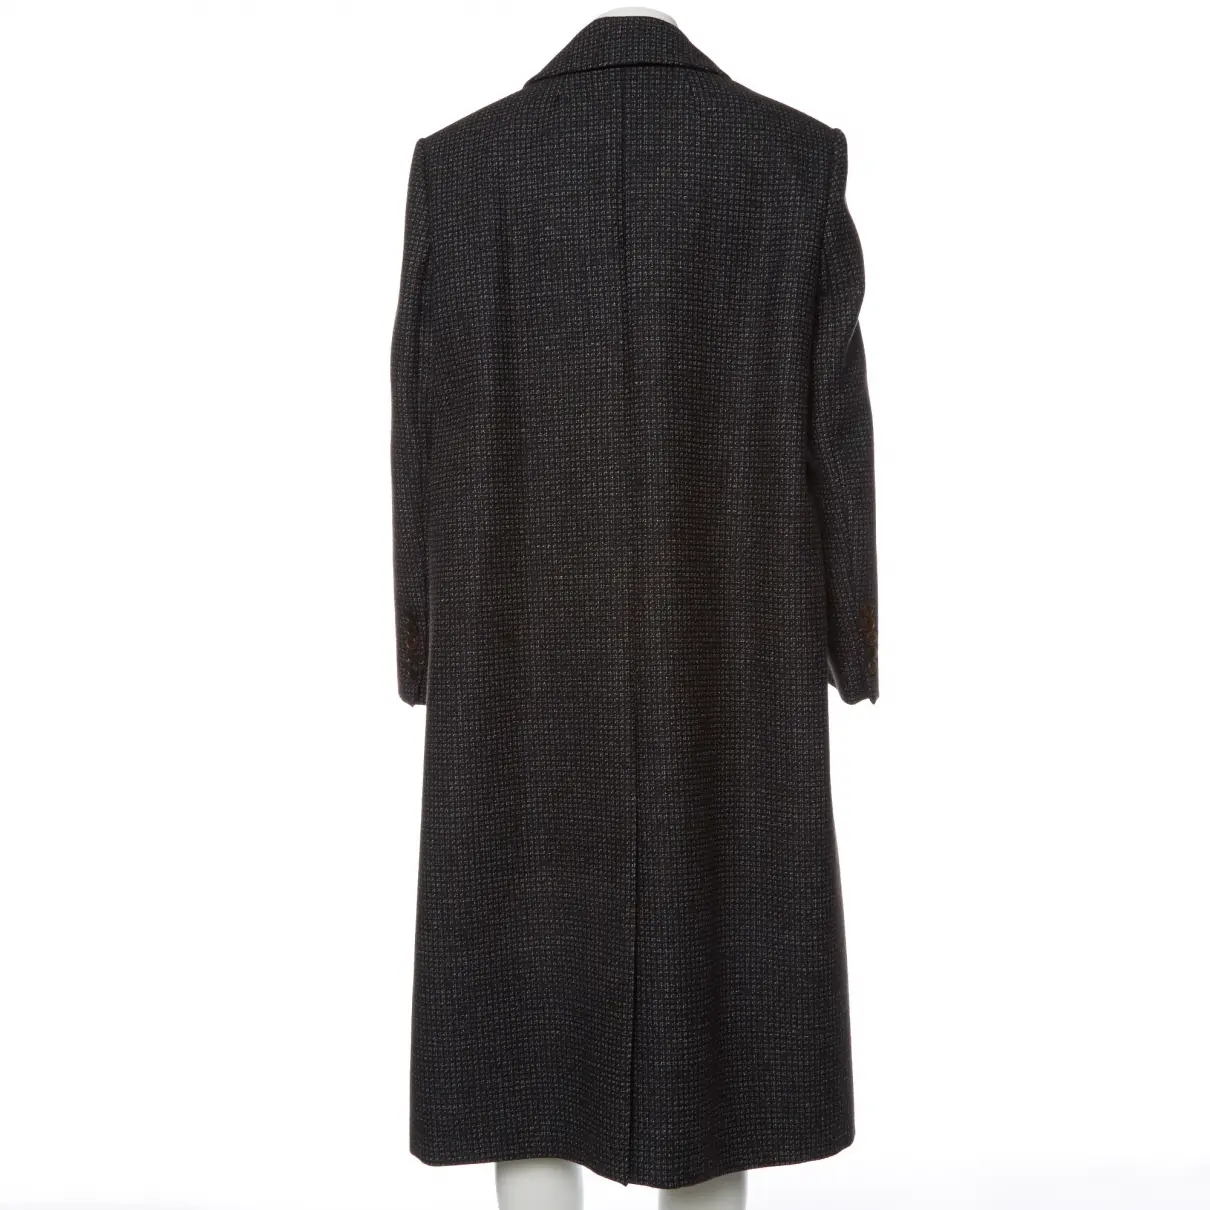 Buy Balenciaga Wool peacoat online